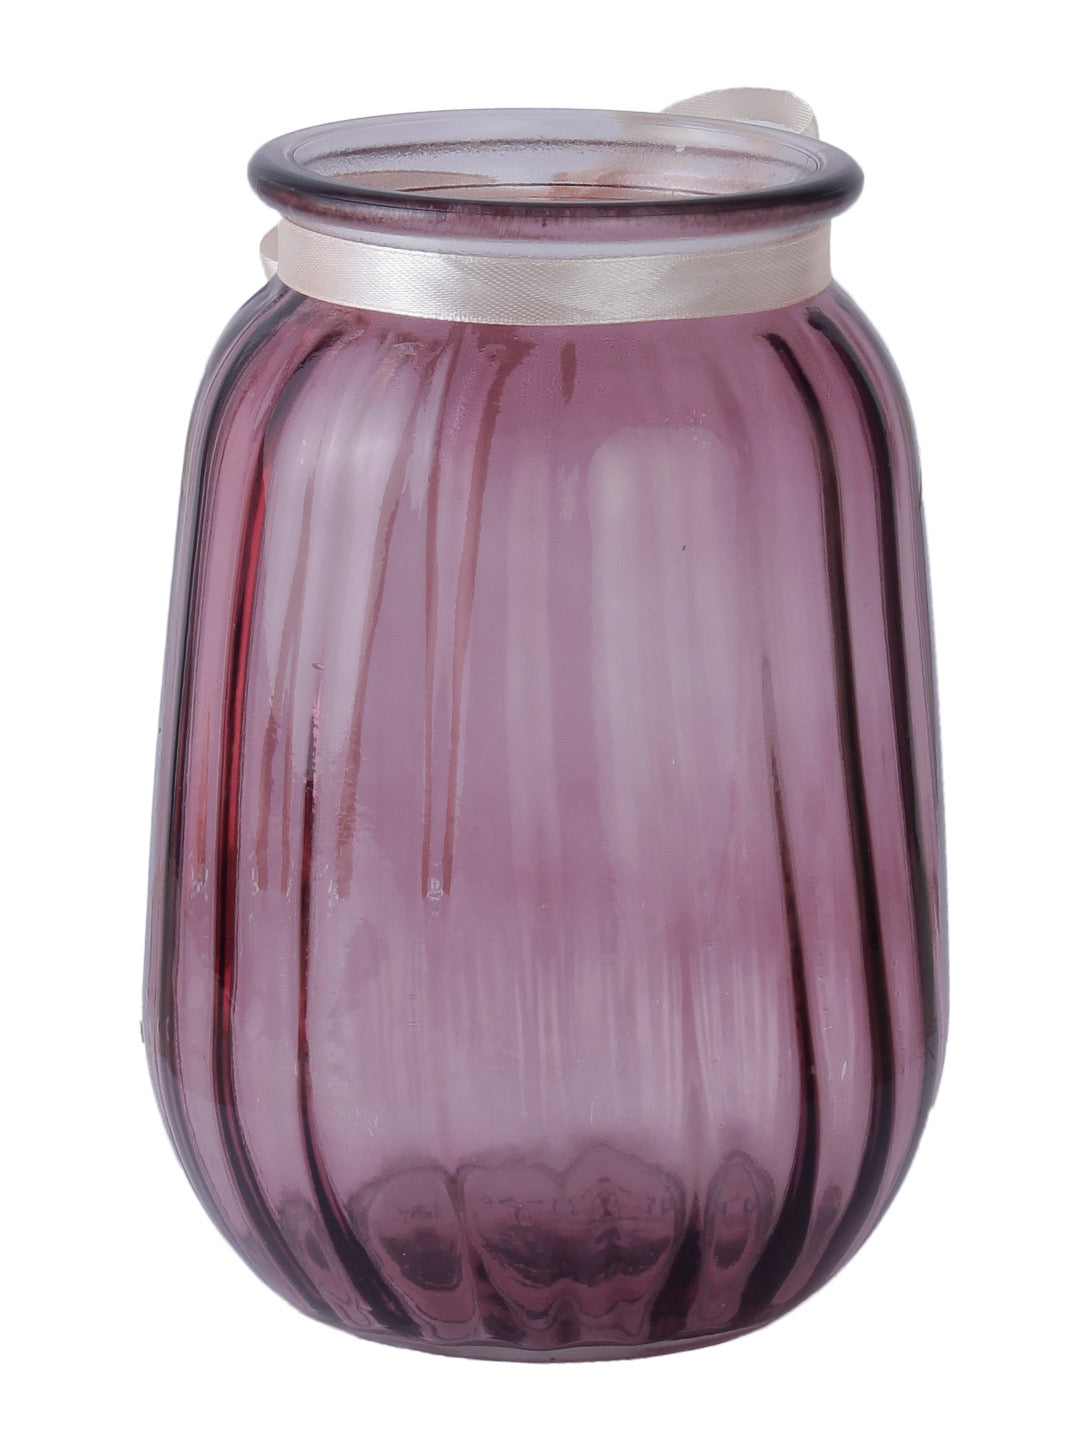 Wine Colour Glass Flower Vase - Default Title (VAS2025)